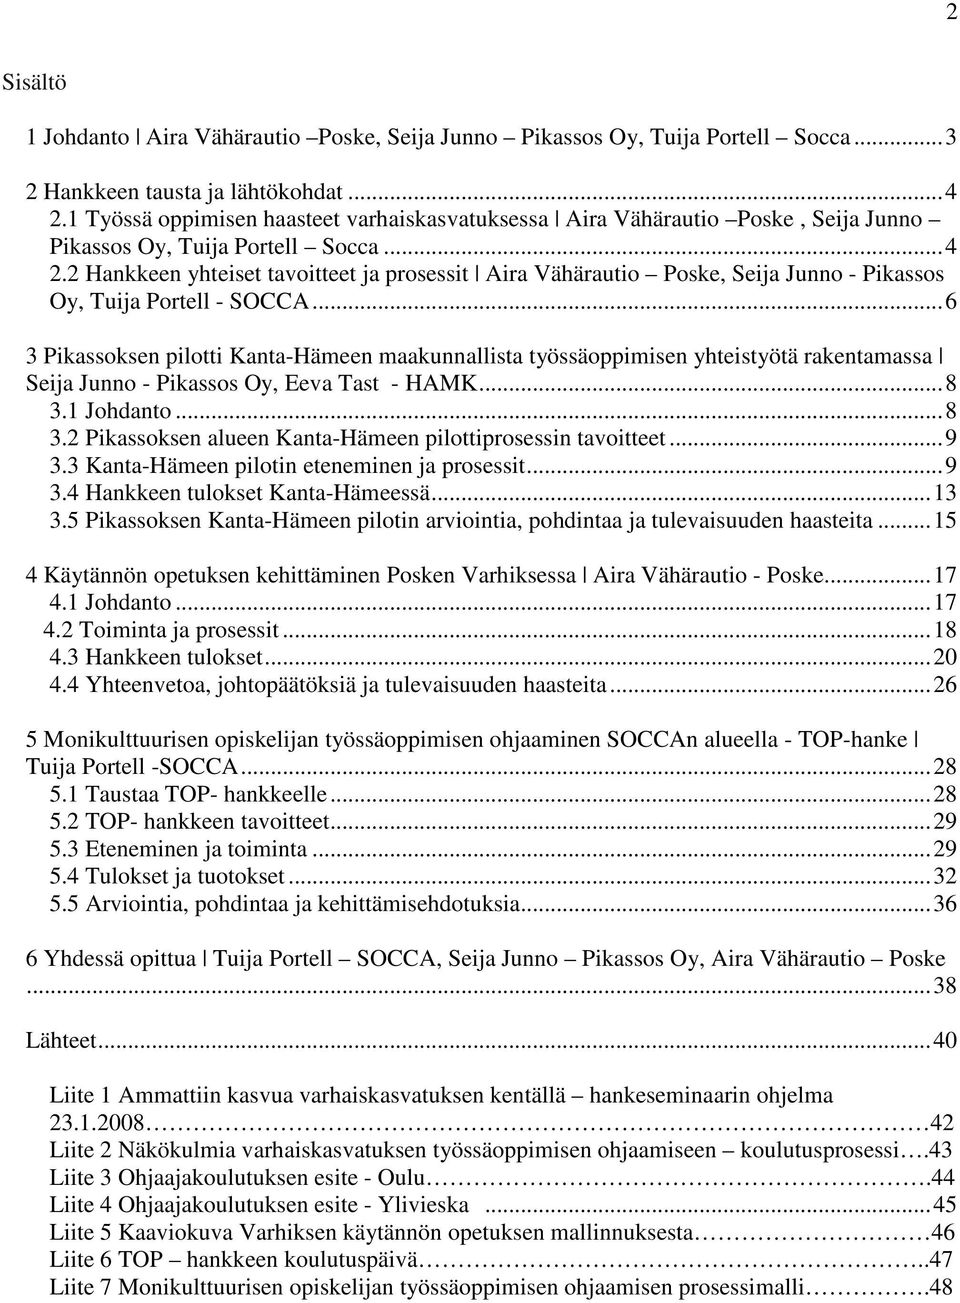 2 Hankkeen yhteiset tavoitteet ja prosessit Aira Vähärautio Poske, Seija Junno - Pikassos Oy, Tuija Portell - SOCCA.